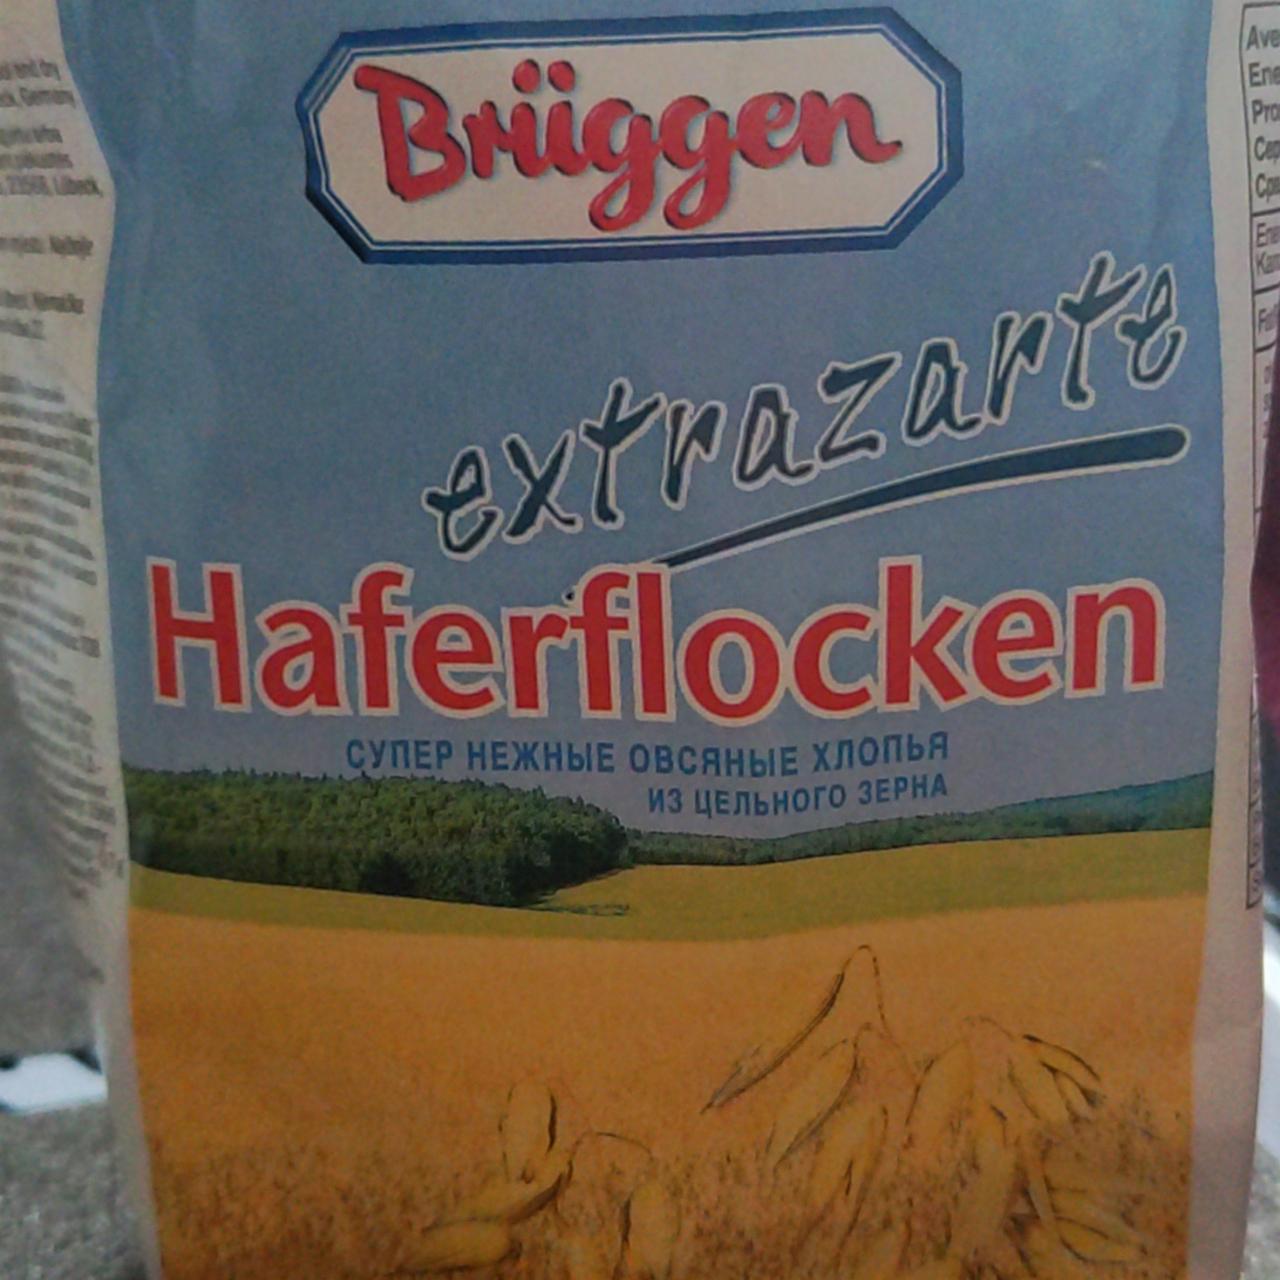 Фото - Пластівці вівсяні з цільнового зерна Haferflocken Bruggen